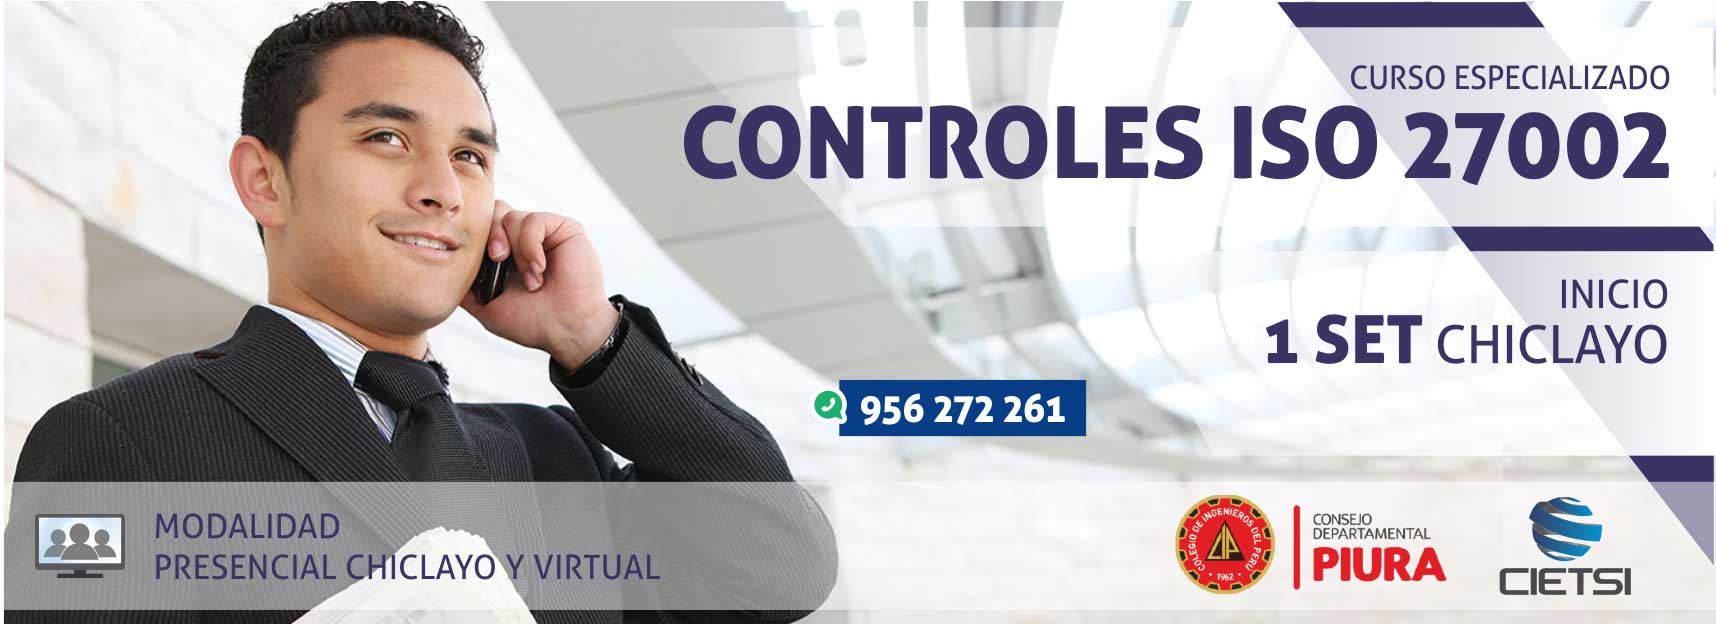 CURSO ESPECIALIZADO CONTROLES ISO 27002 (NUEVO)